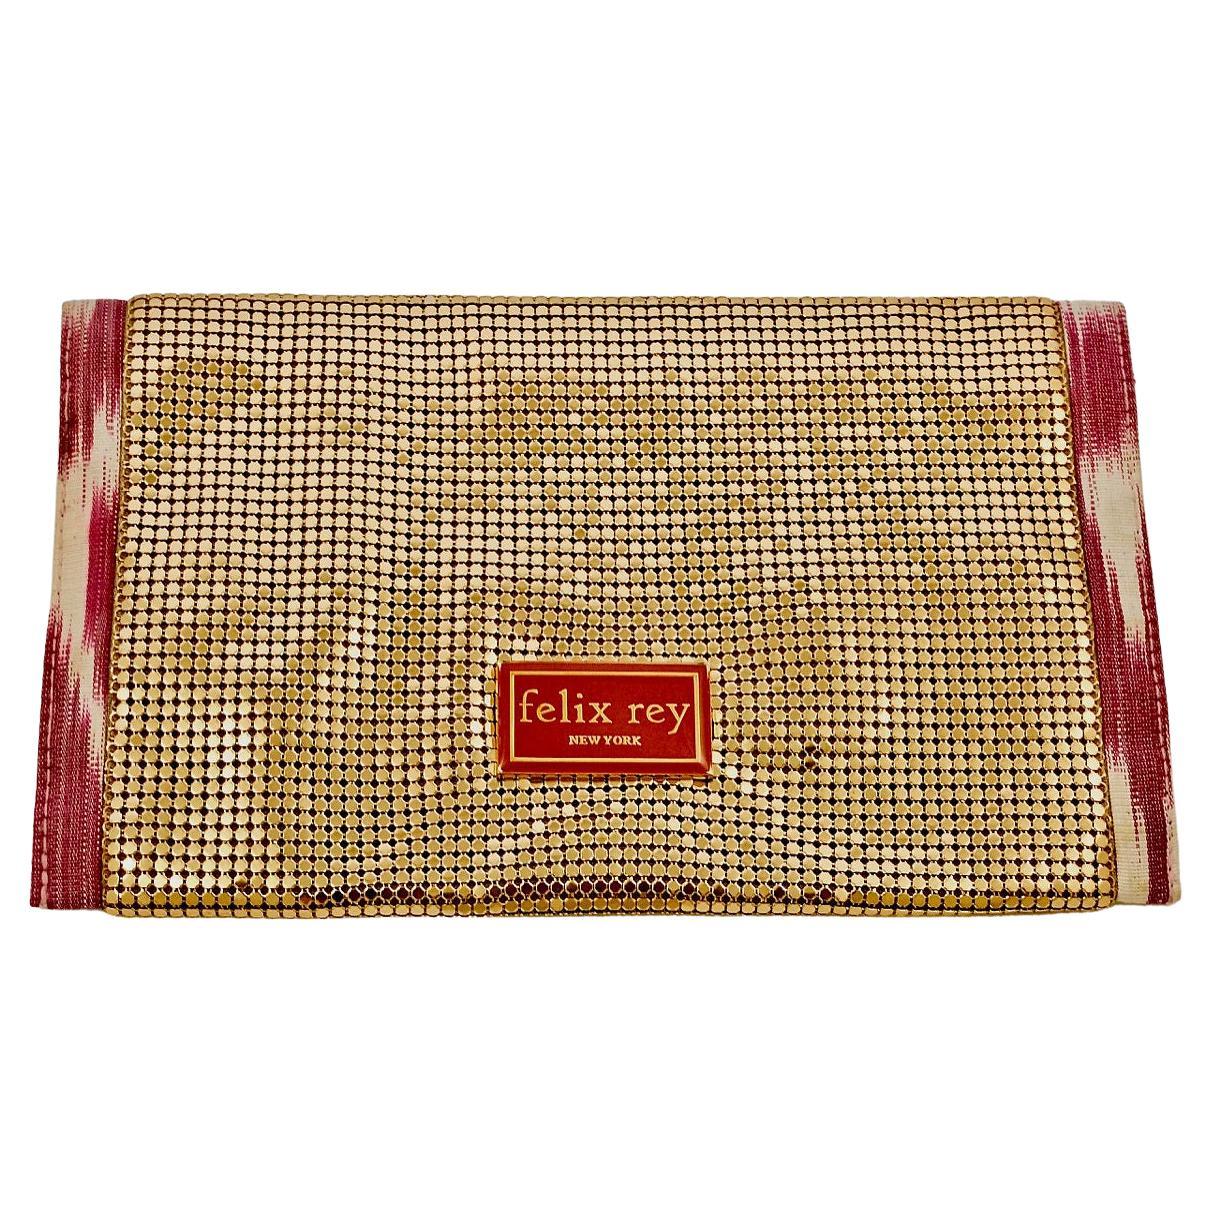 Magnifique pochette Felix Rey New York en maille dorée avec bordure en tissu ikat rose et blanc, et double fermeture magnétique. Mesure la largeur 22.8 cm / 8.9 inches et la hauteur 14 cm / 5.5 inches. A l'intérieur, il y a une jolie doublure en